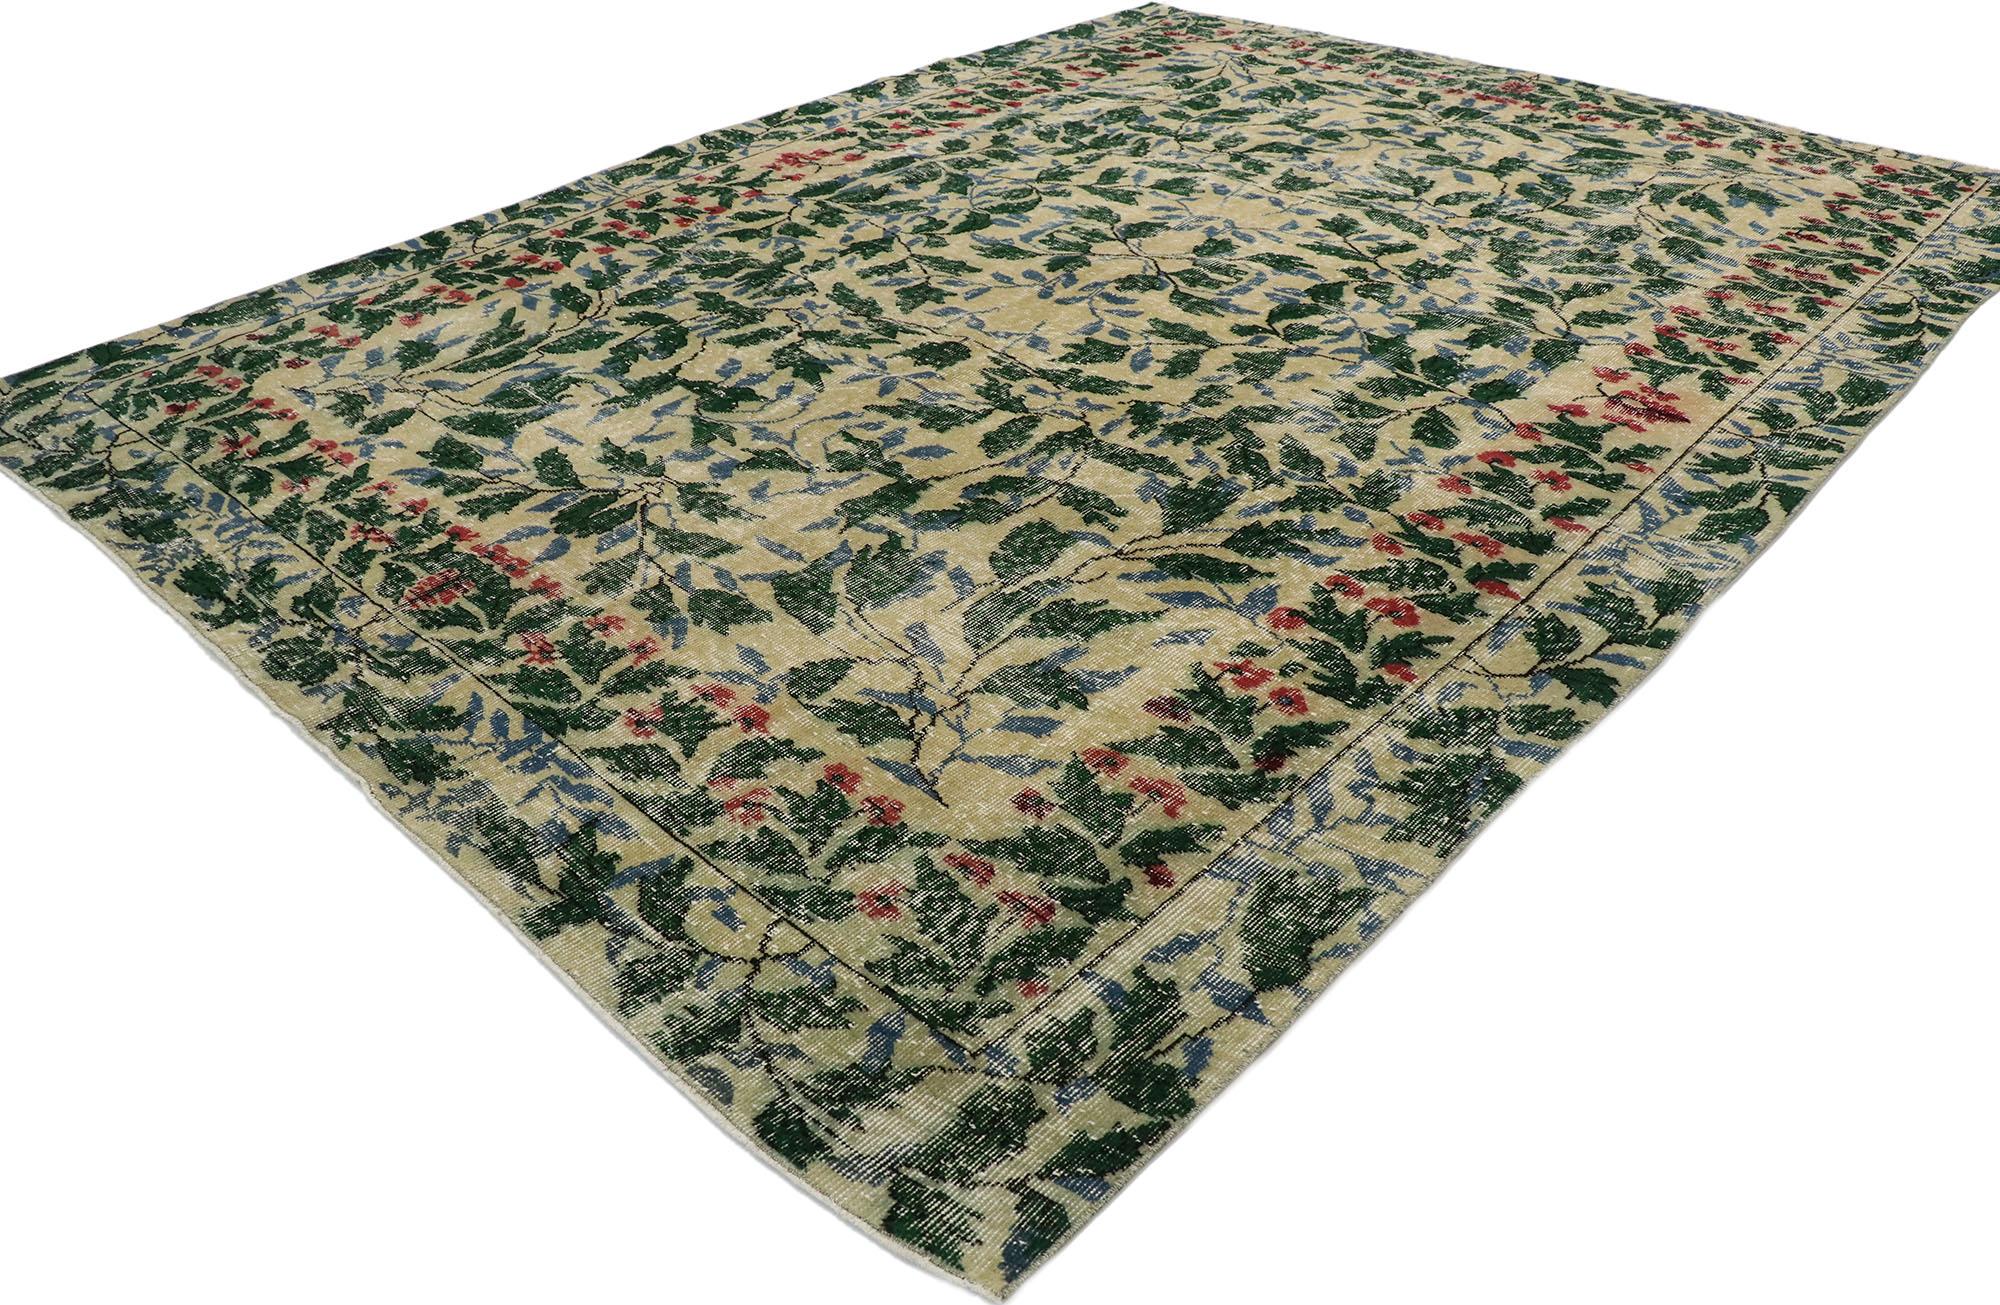 53279 Tapis Sivas turc vintage vieilli, 07'08 x 09'10. Les tapis de Sivas, originaires du centre de l'Anatolie, en Turquie, sont réputés pour leur artisanat impeccable et leurs motifs complexes, géométriques ou floraux, avec des médaillons au